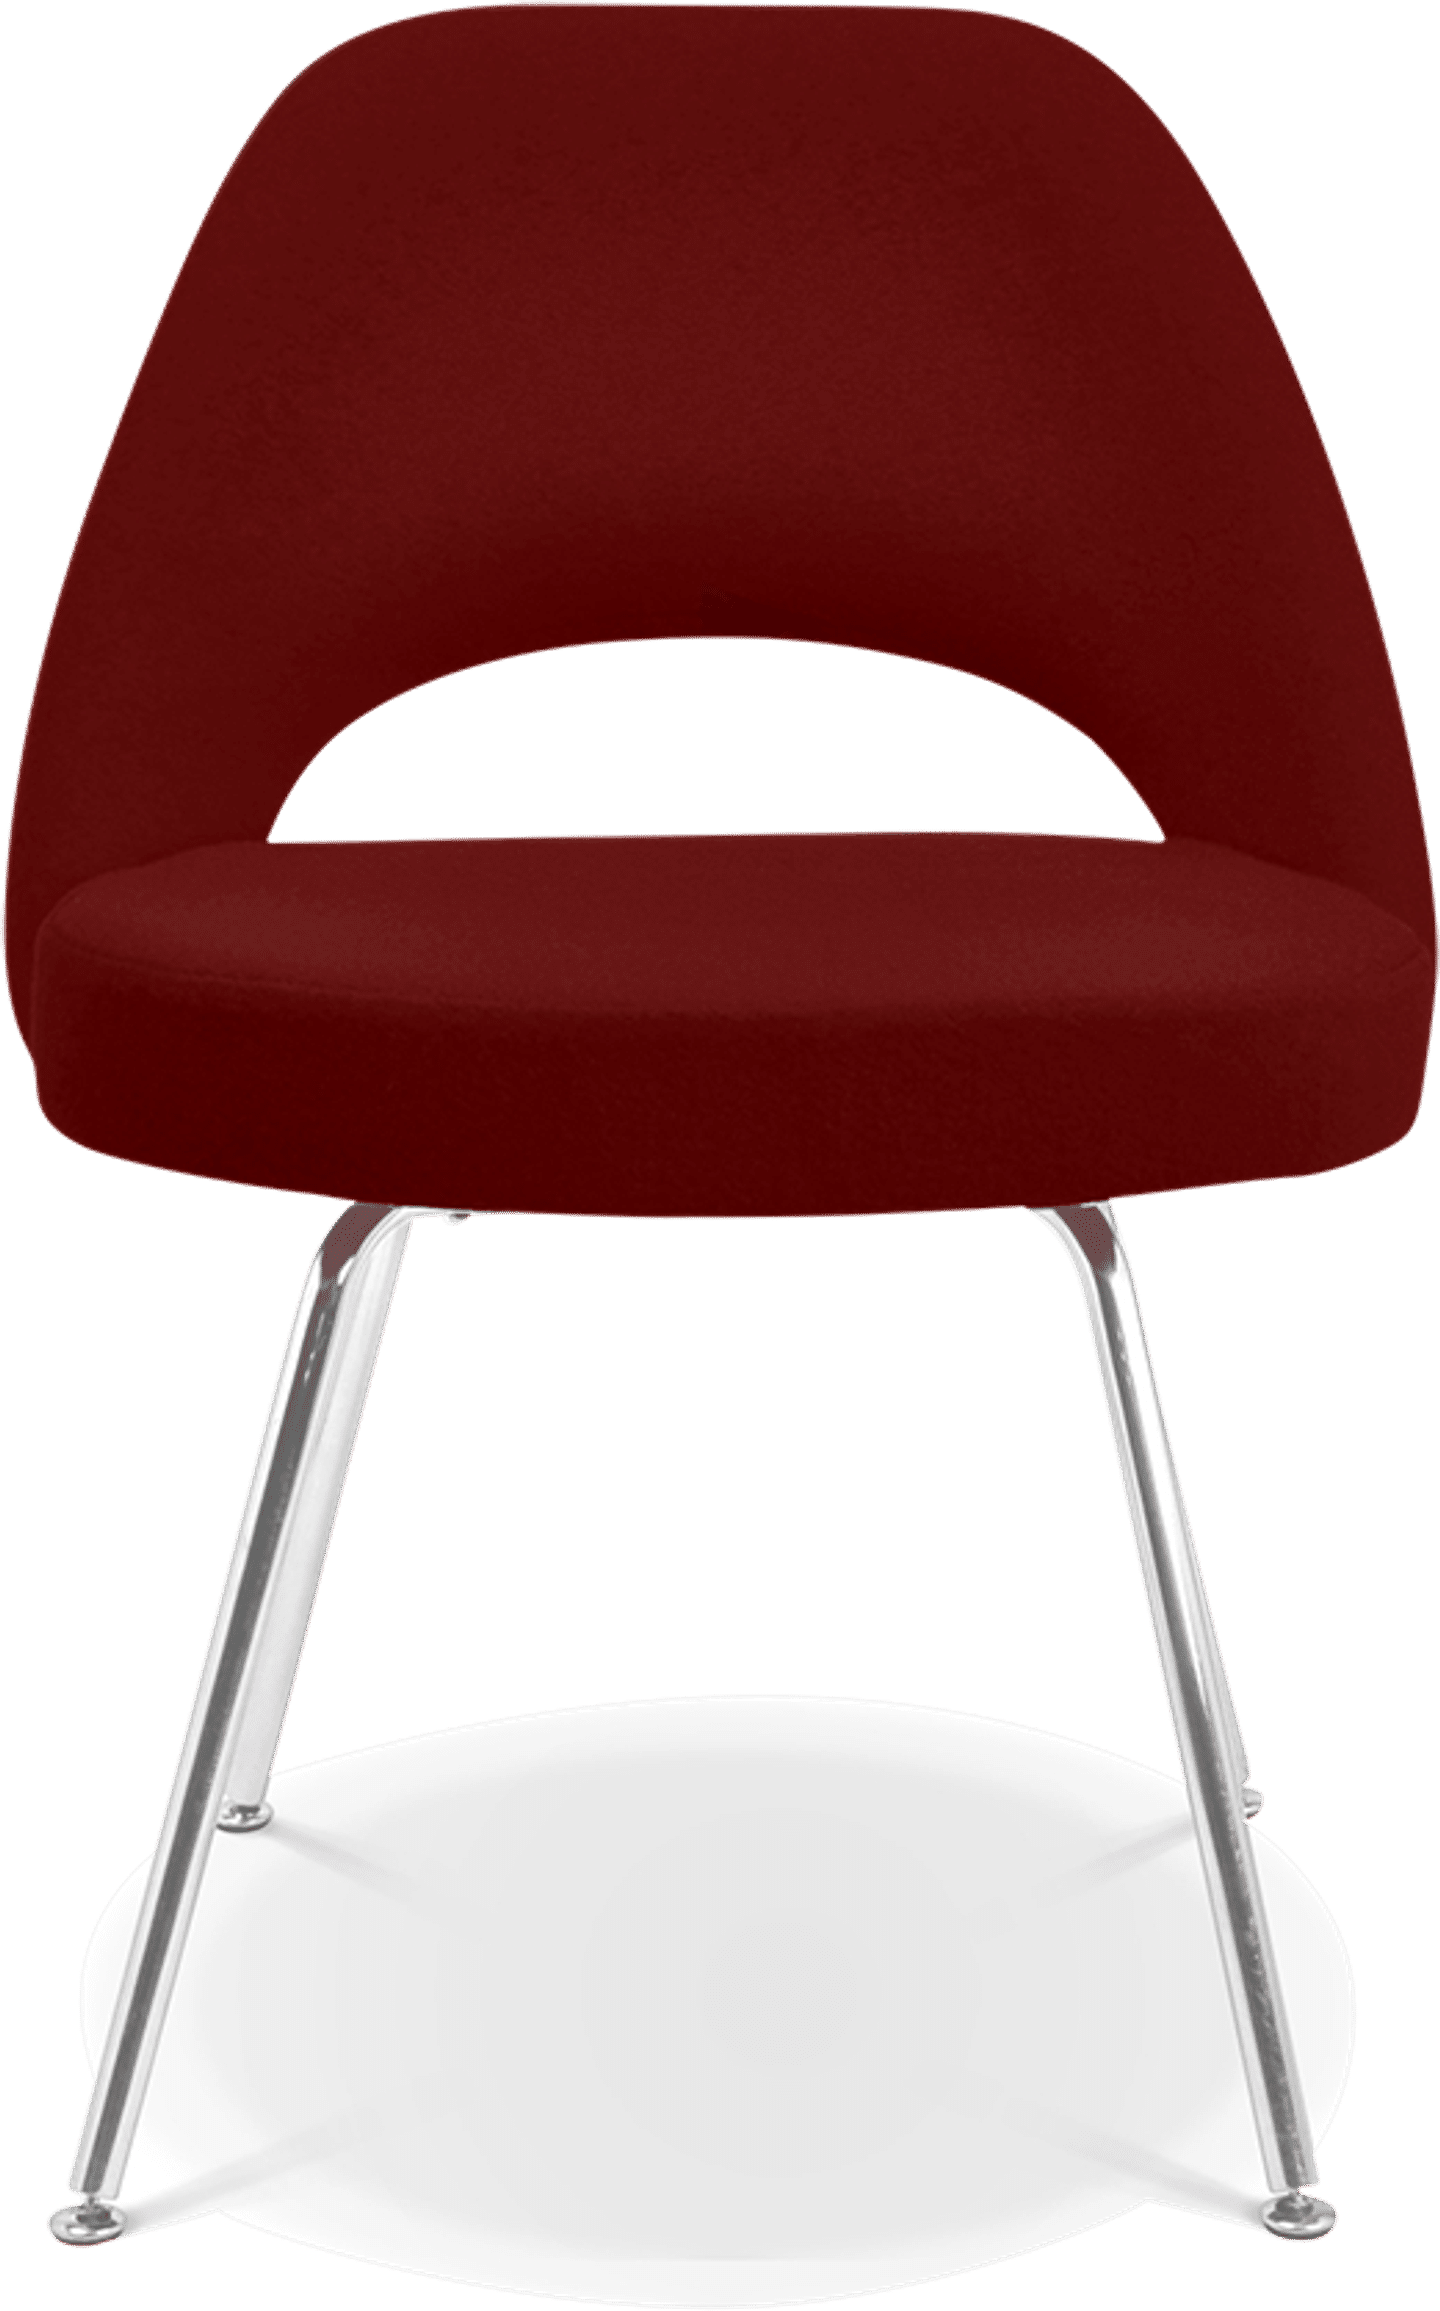 Chaise de direction Saarinen Deep Red image.